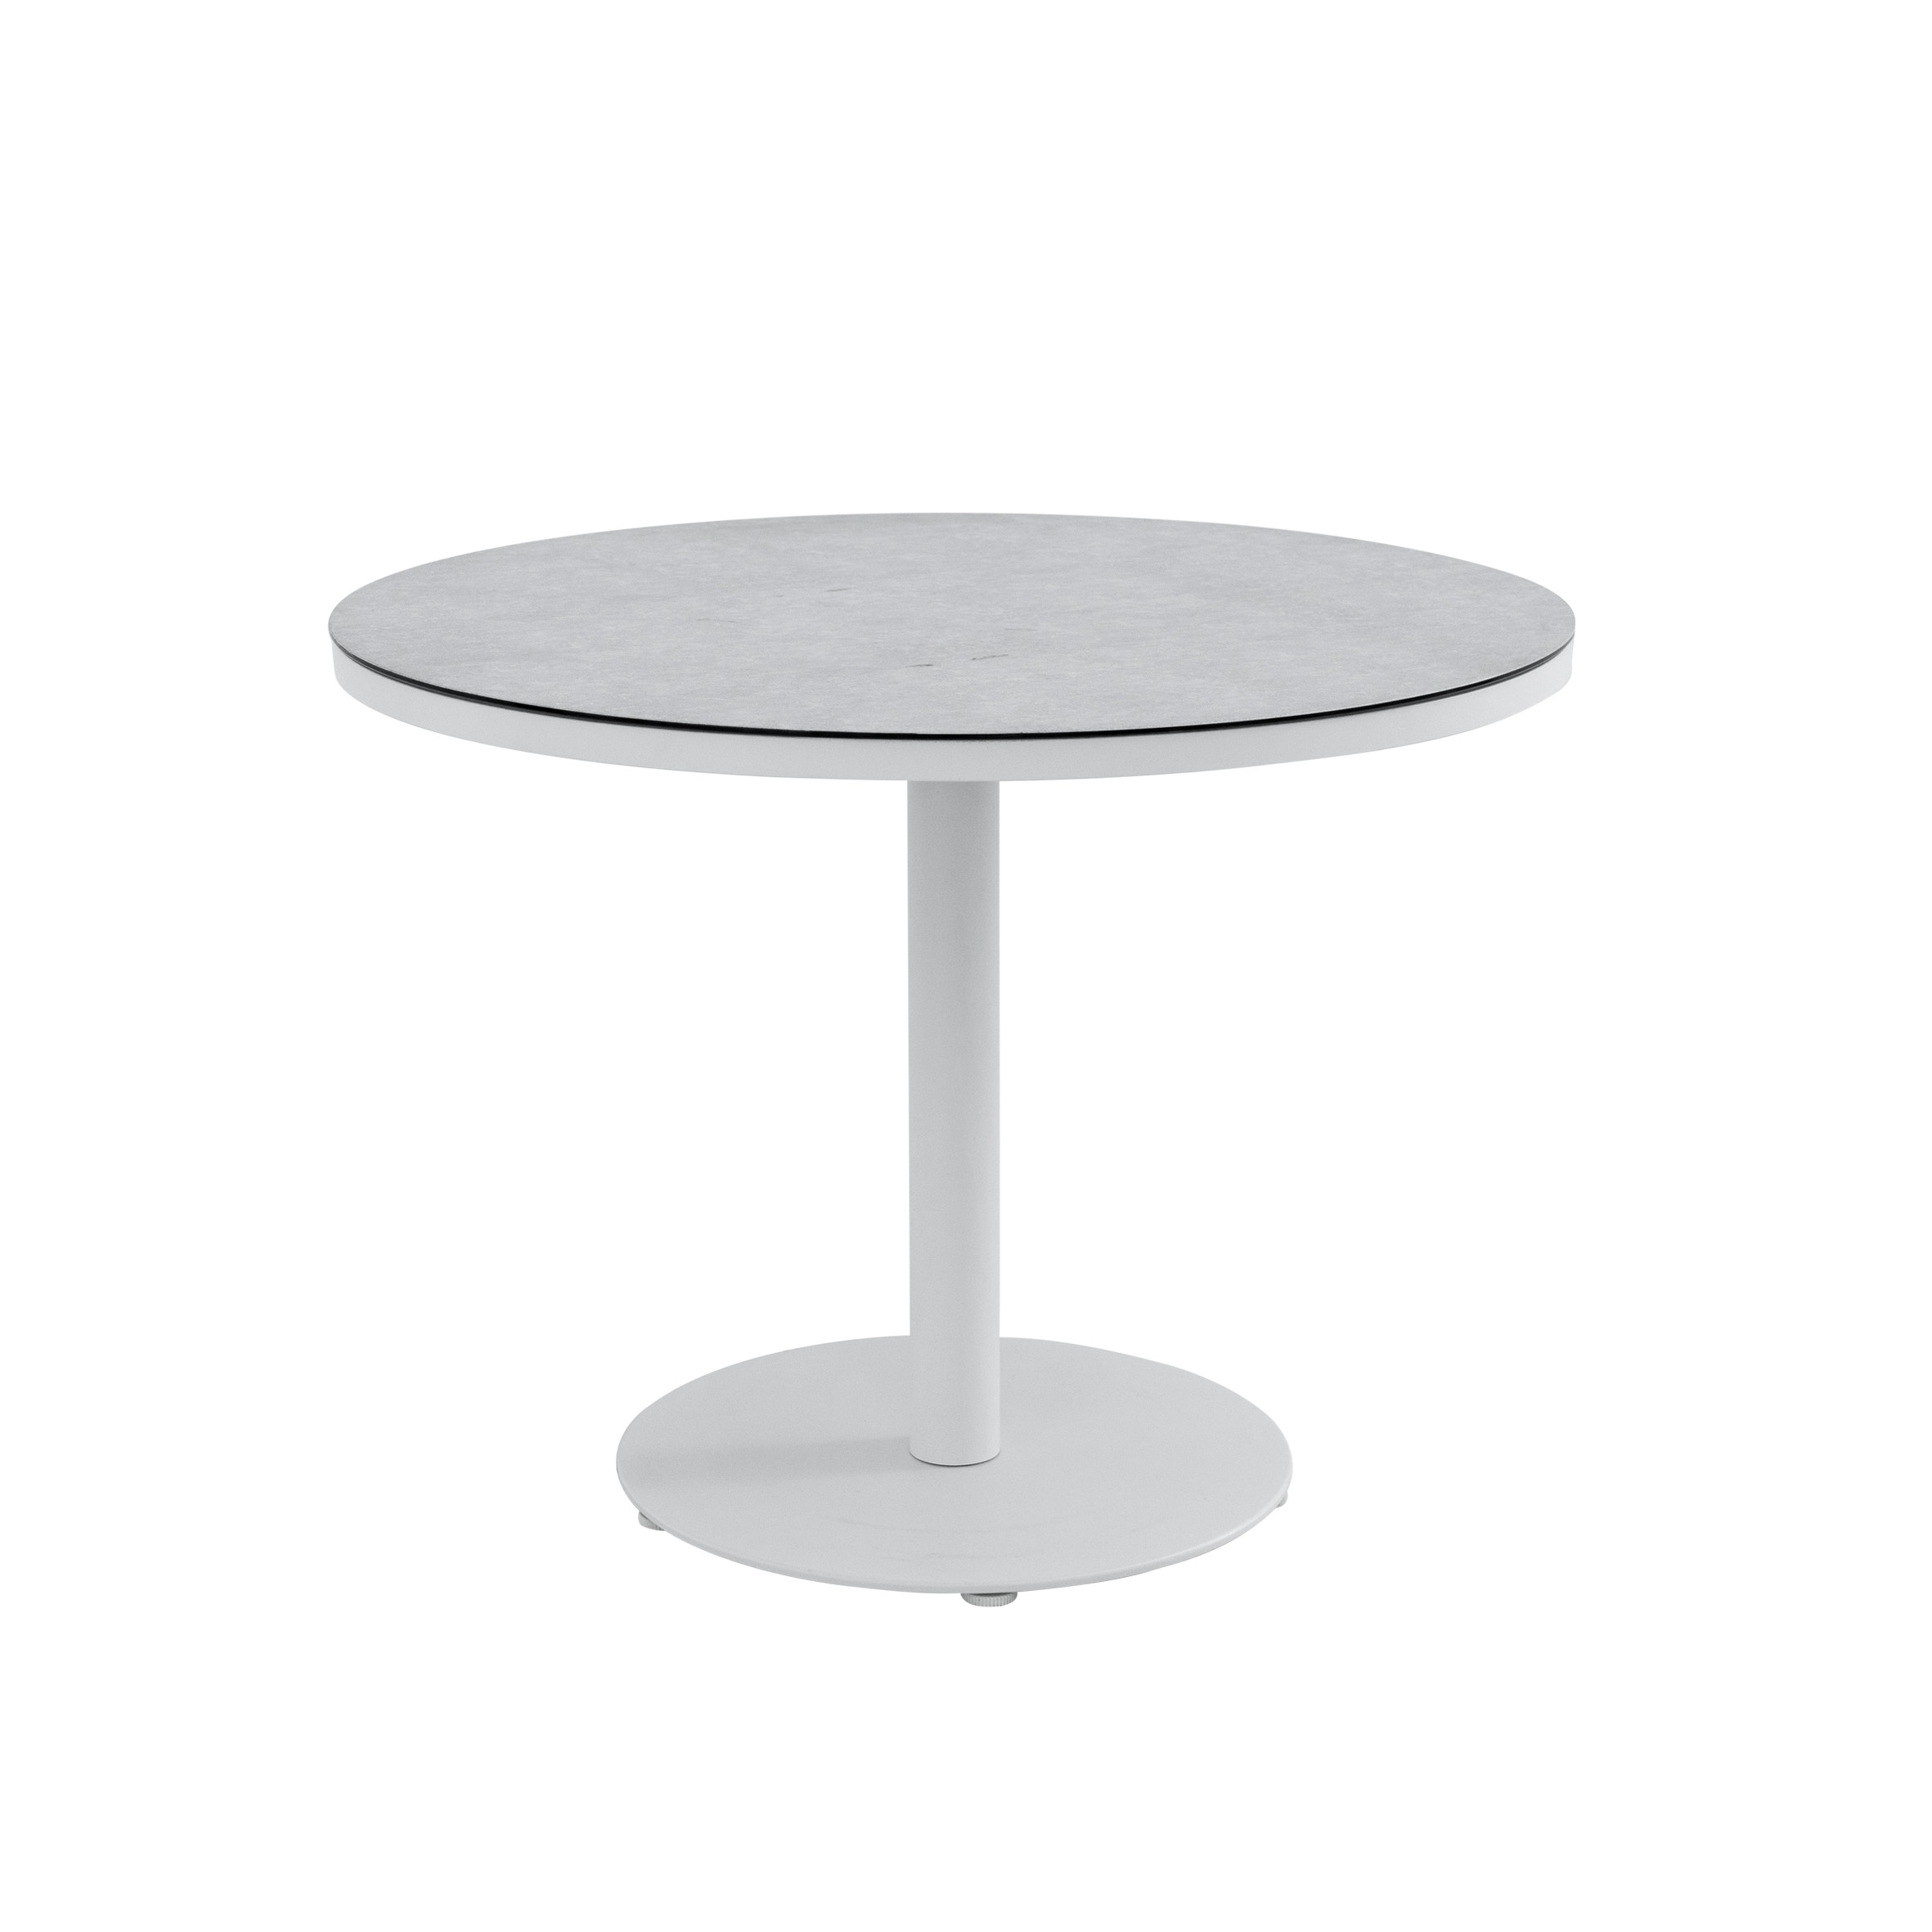 דנטה אלו.שולחן עגול (זכוכית קרמית) תמונה מוצגת